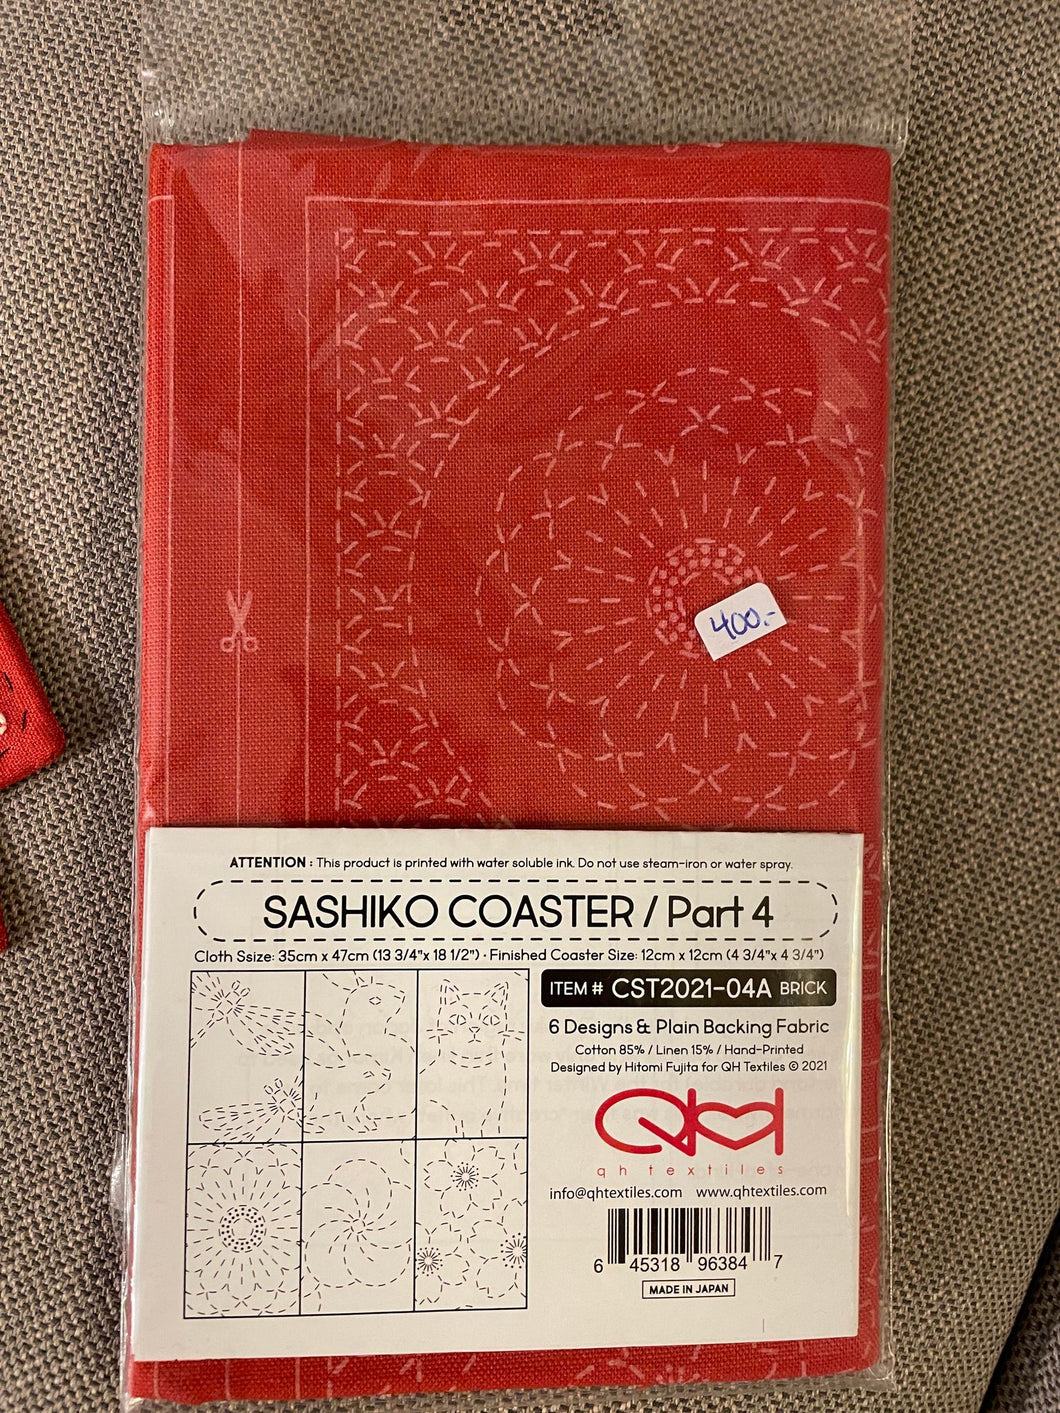 Sashiko coaster